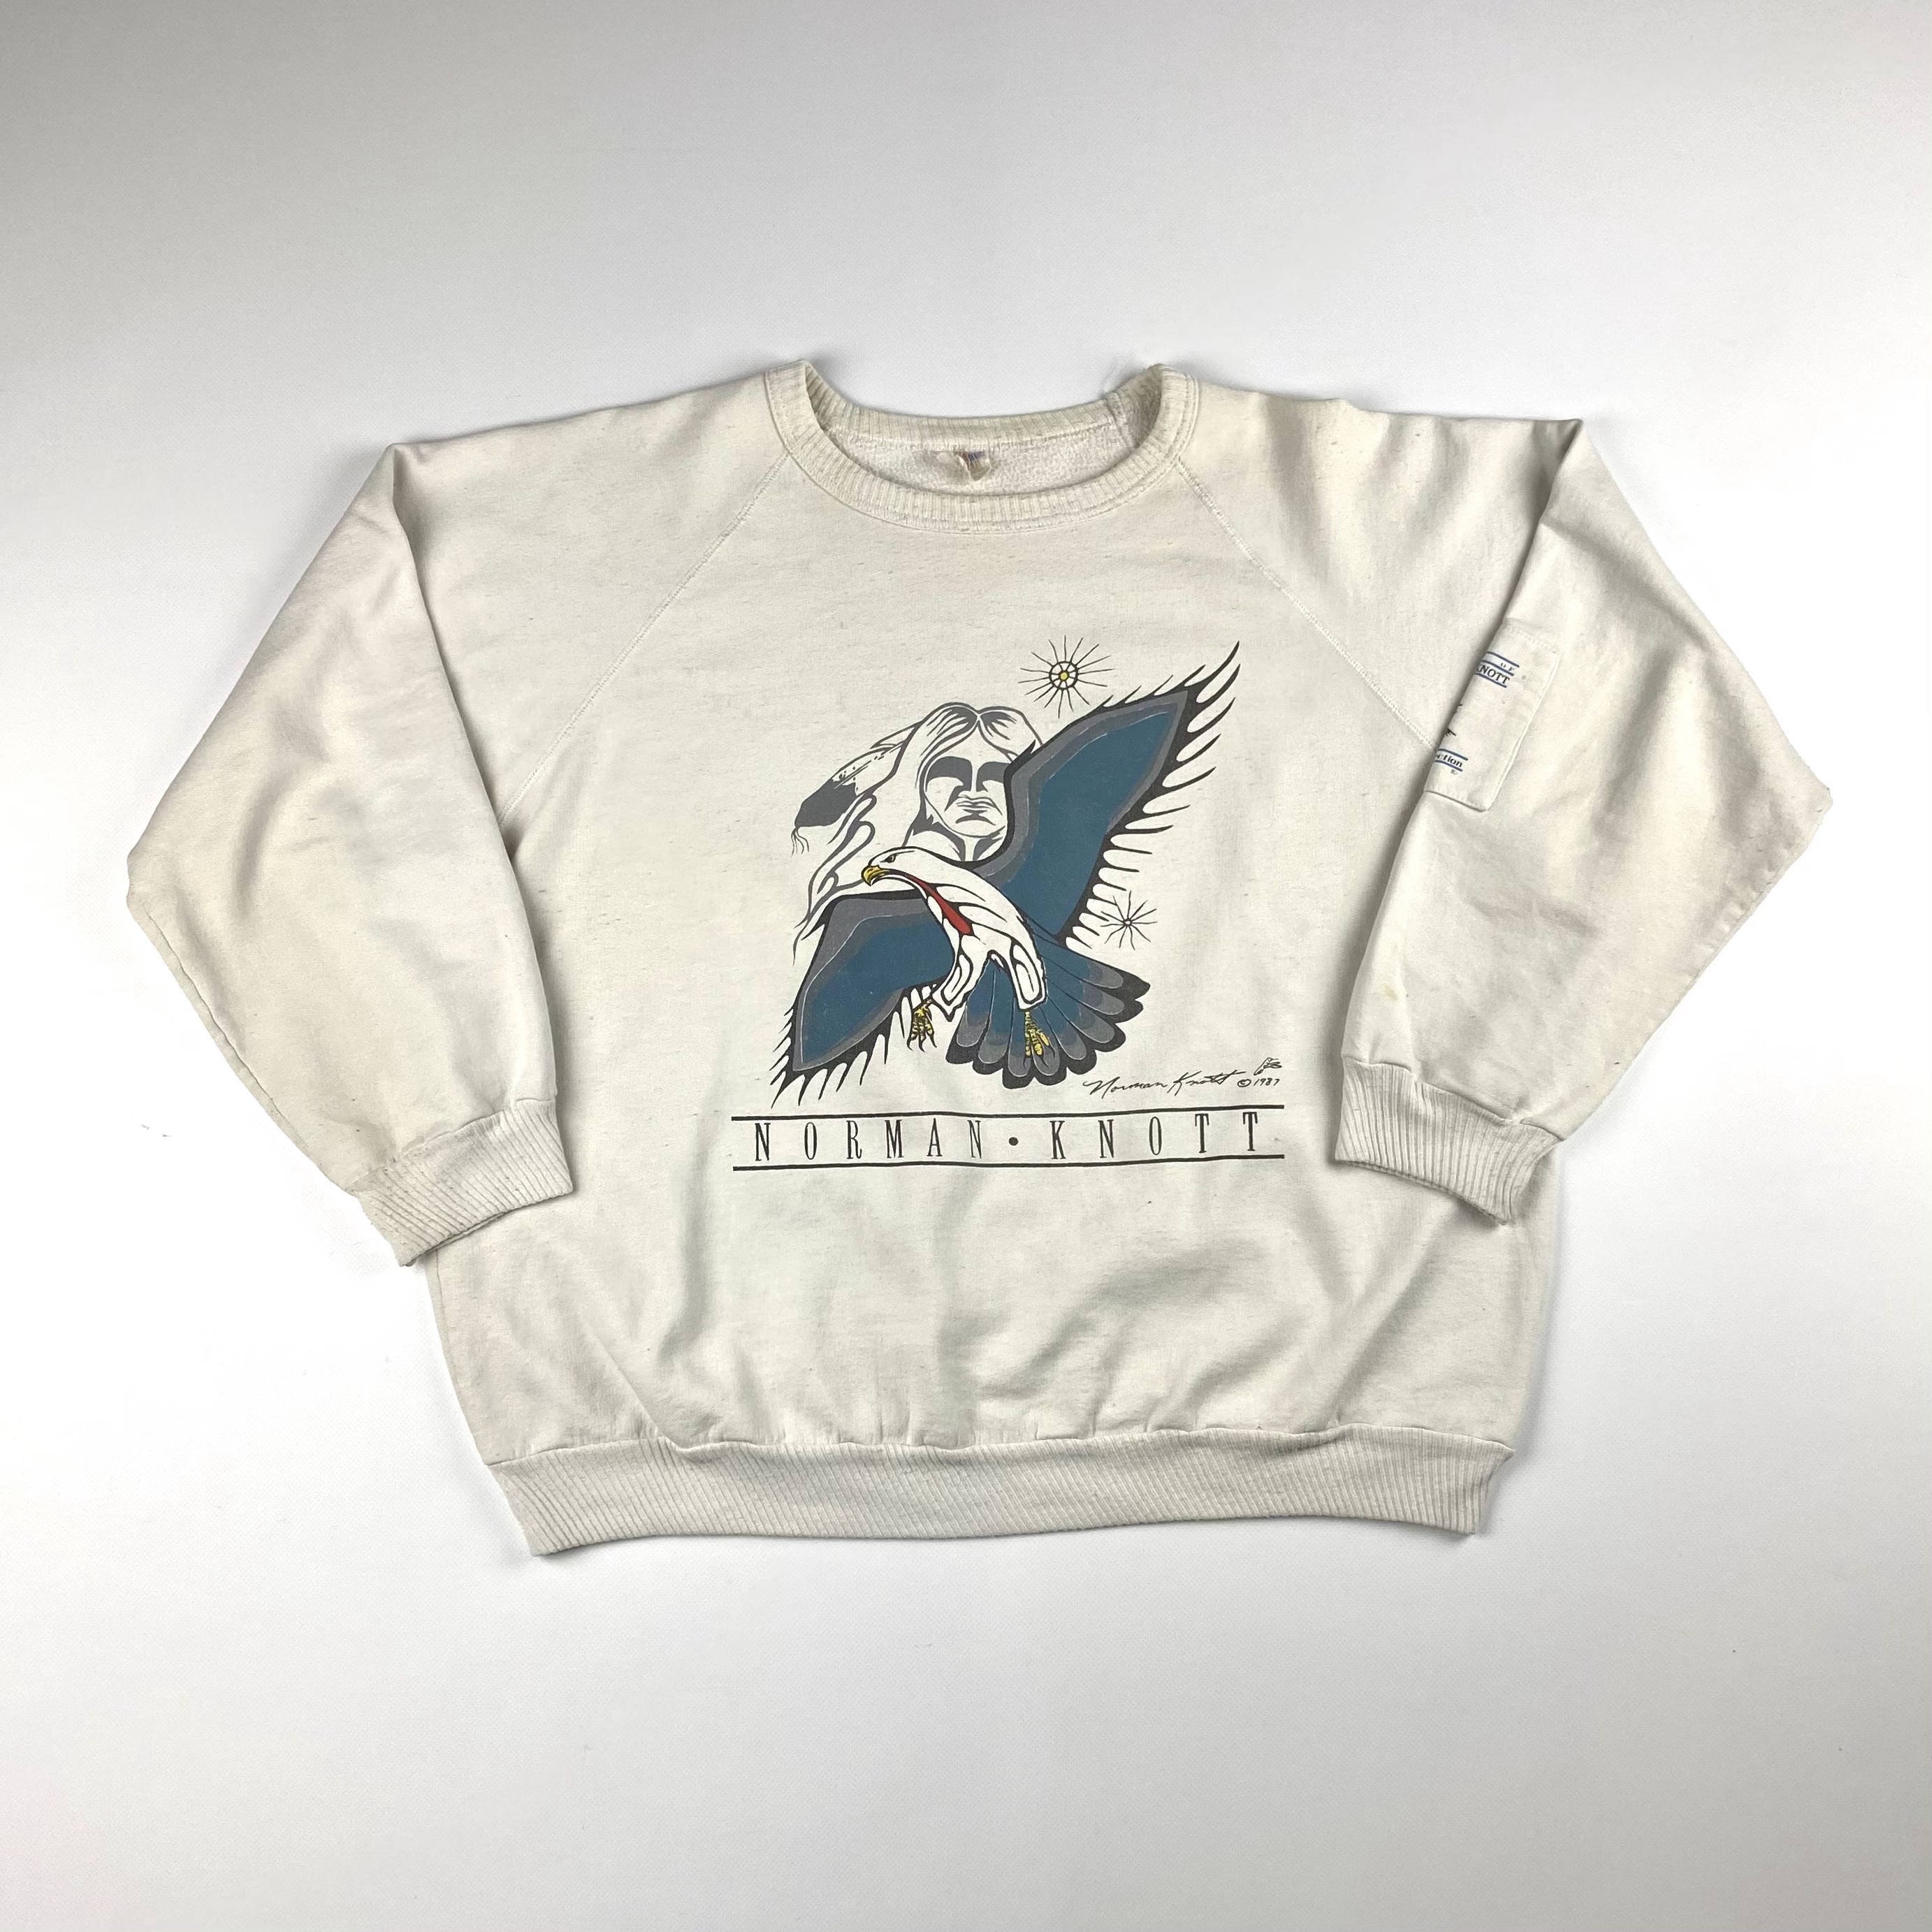 Vintage 1987 Norman Knott Art Print Sweatshirt Sz Lrg | Etsy